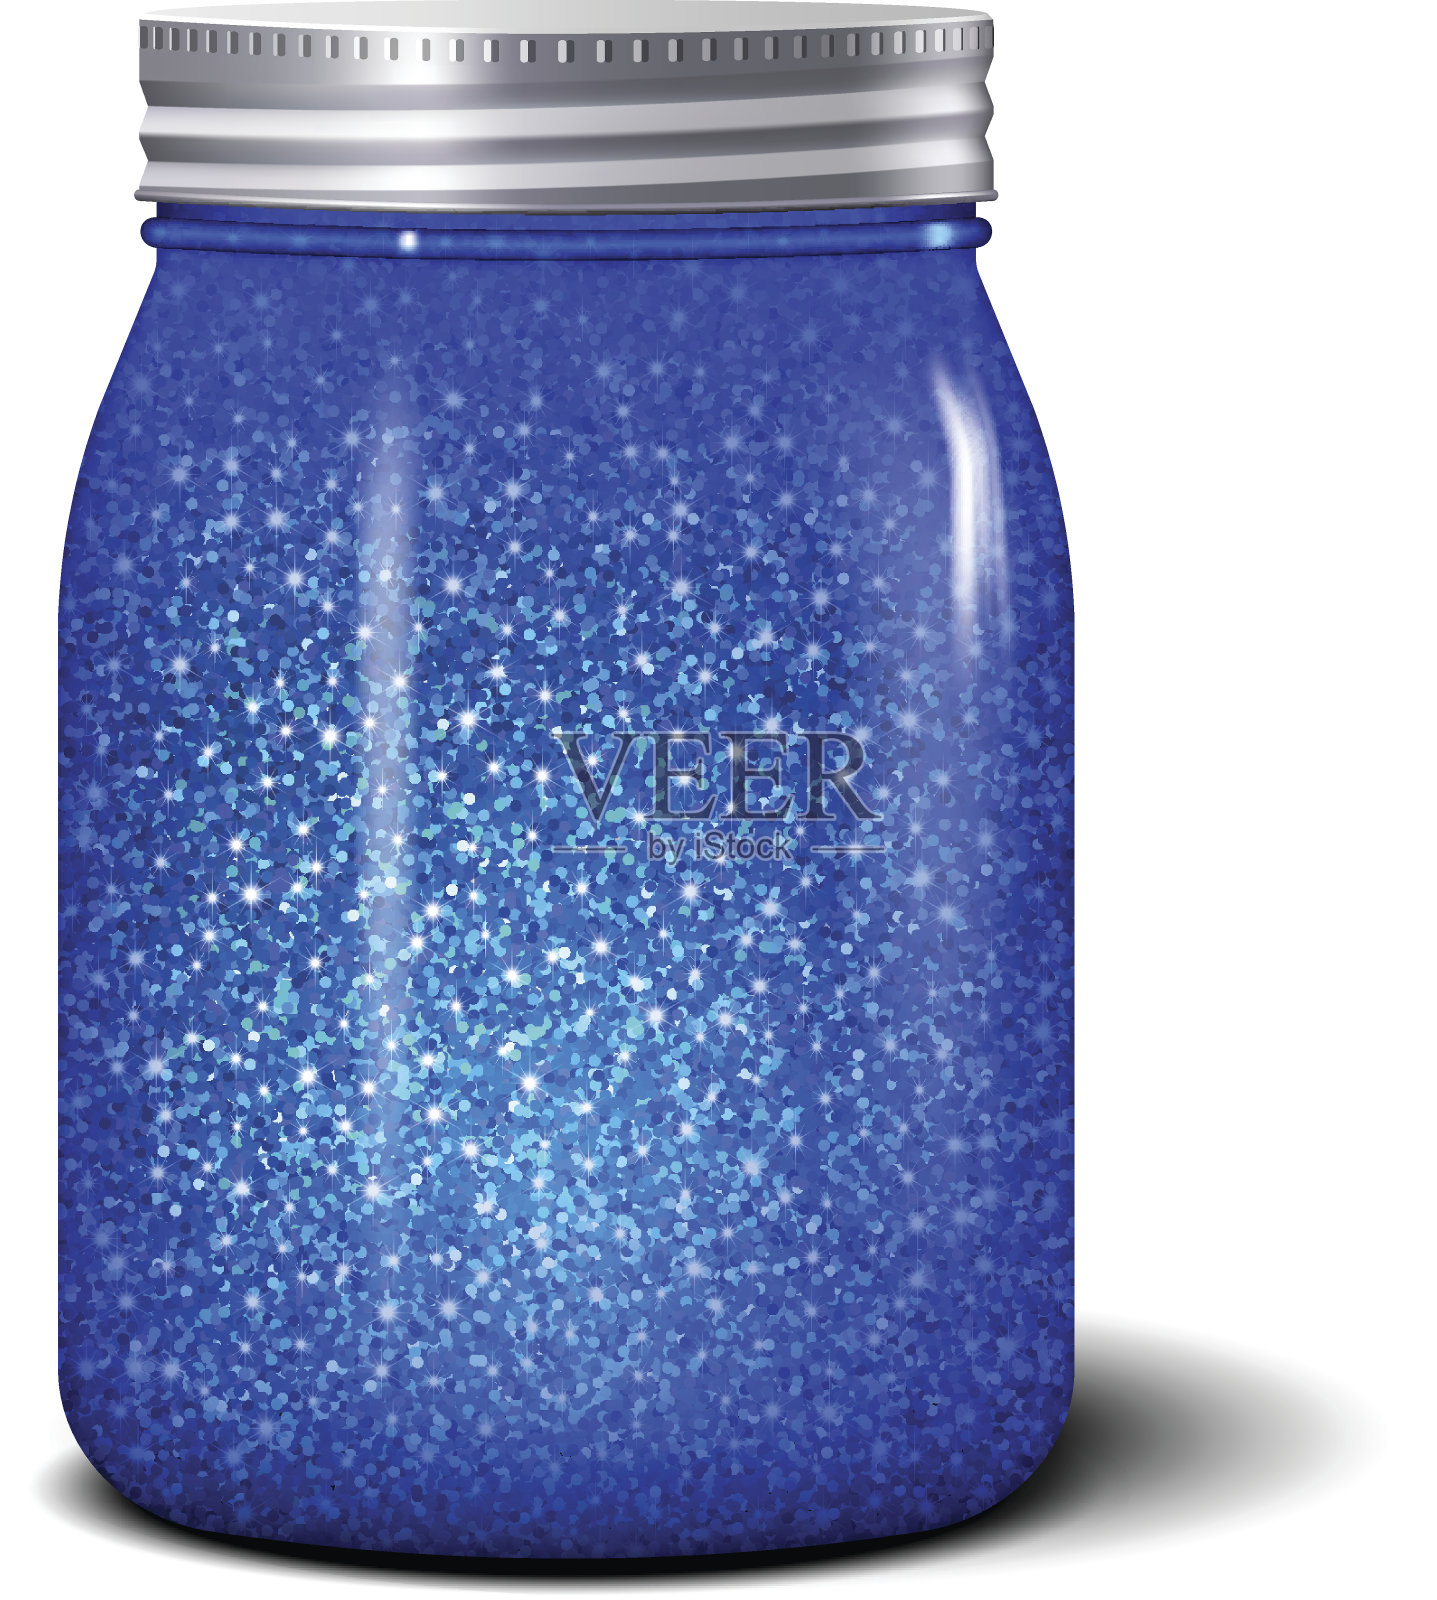 闪闪发光的jar。带有闪亮蓝色火花的现实物体插画图片素材